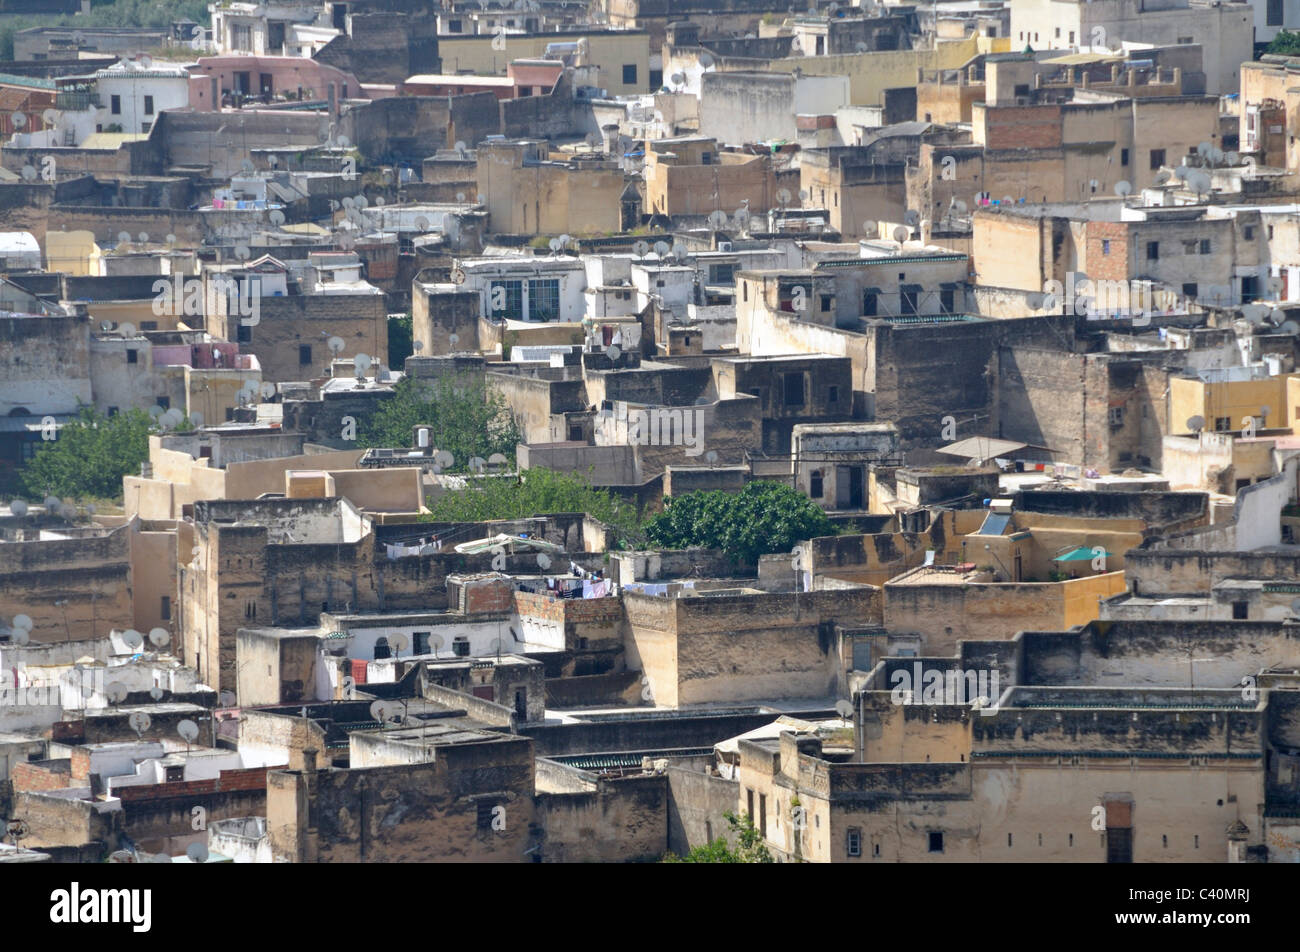 Afrika, Architektur, Häuser, Wohnungen, Marokko, Sat-Schüsseln, Wohngebäude Stockfoto